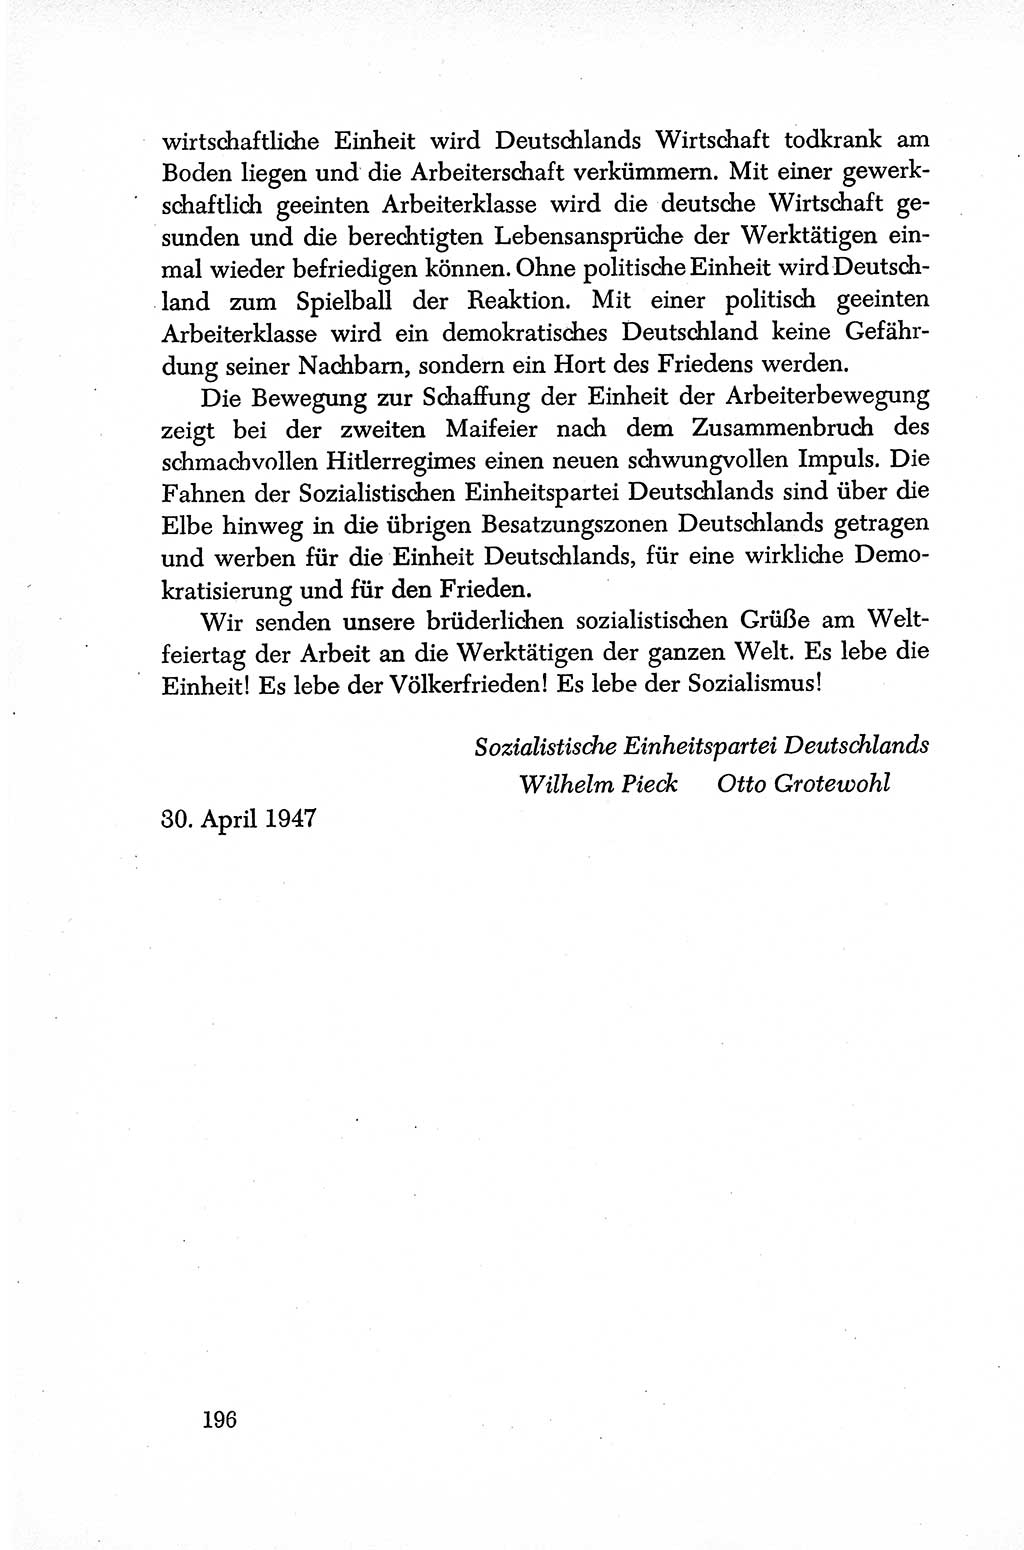 Dokumente der Sozialistischen Einheitspartei Deutschlands (SED) [Sowjetische Besatzungszone (SBZ) Deutschlands] 1946-1948, Seite 196 (Dok. SED SBZ Dtl. 1946-1948, S. 196)